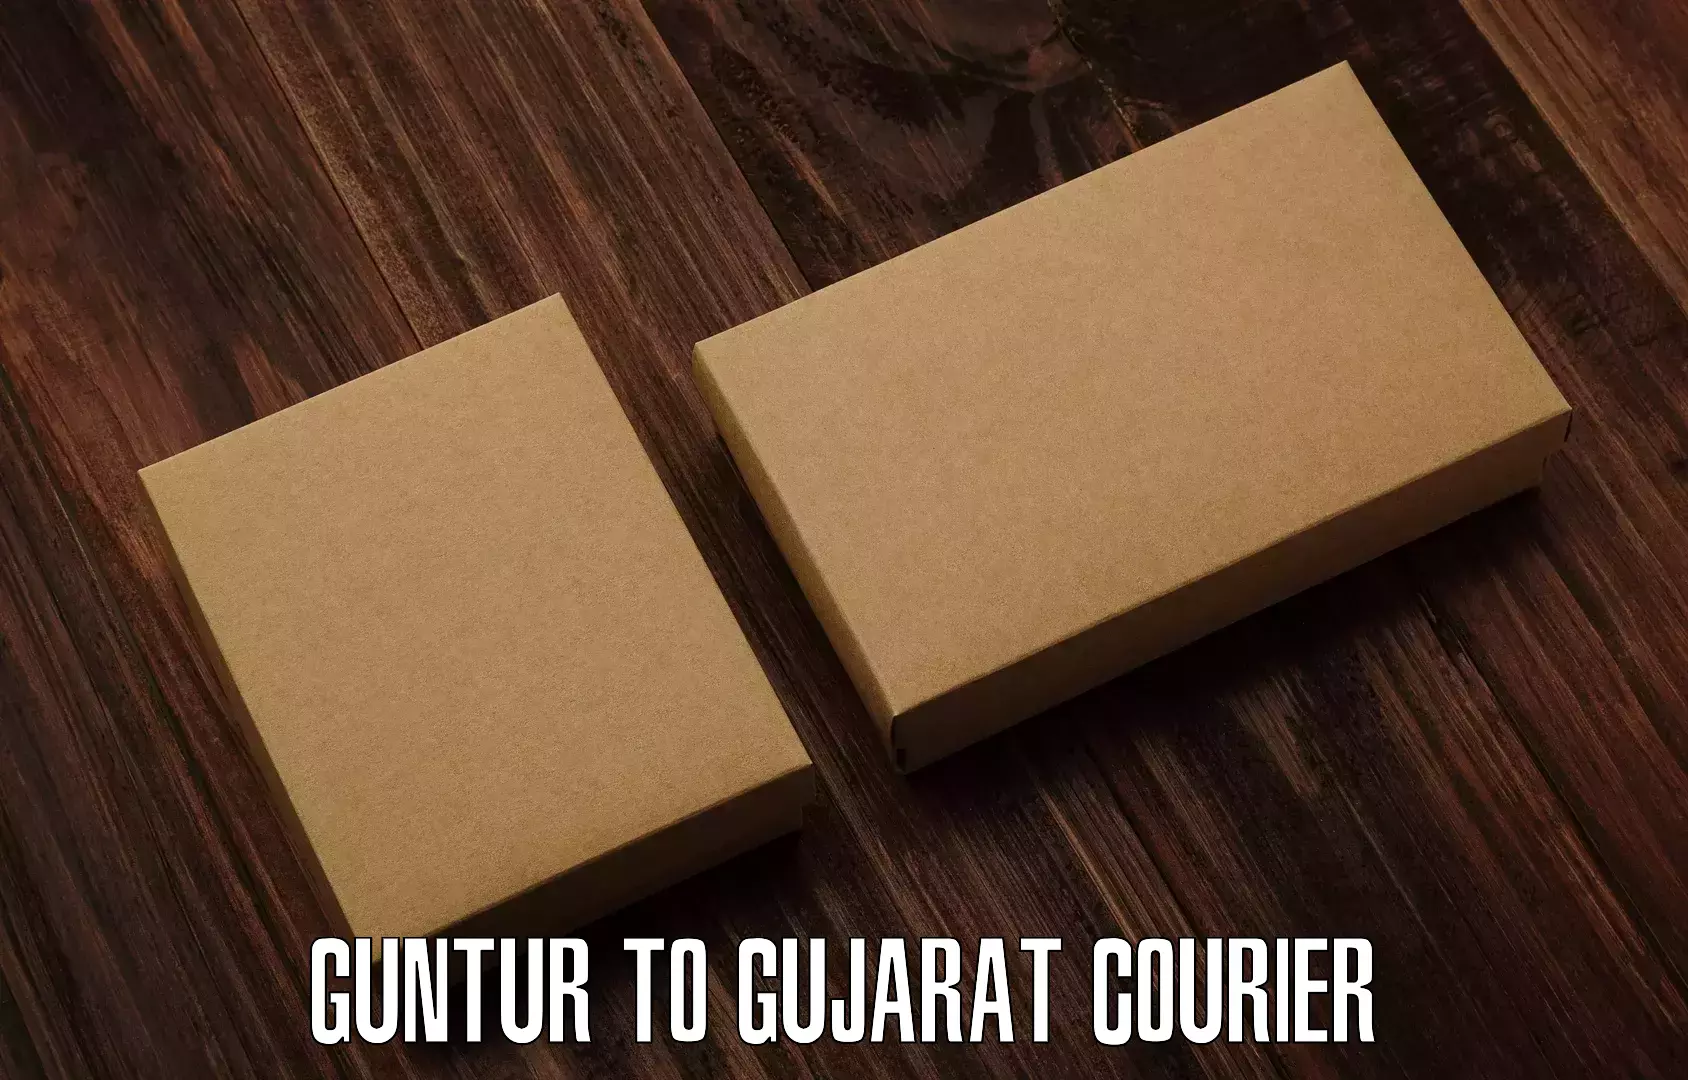 Supply chain delivery Guntur to IIT Gandhi Nagar